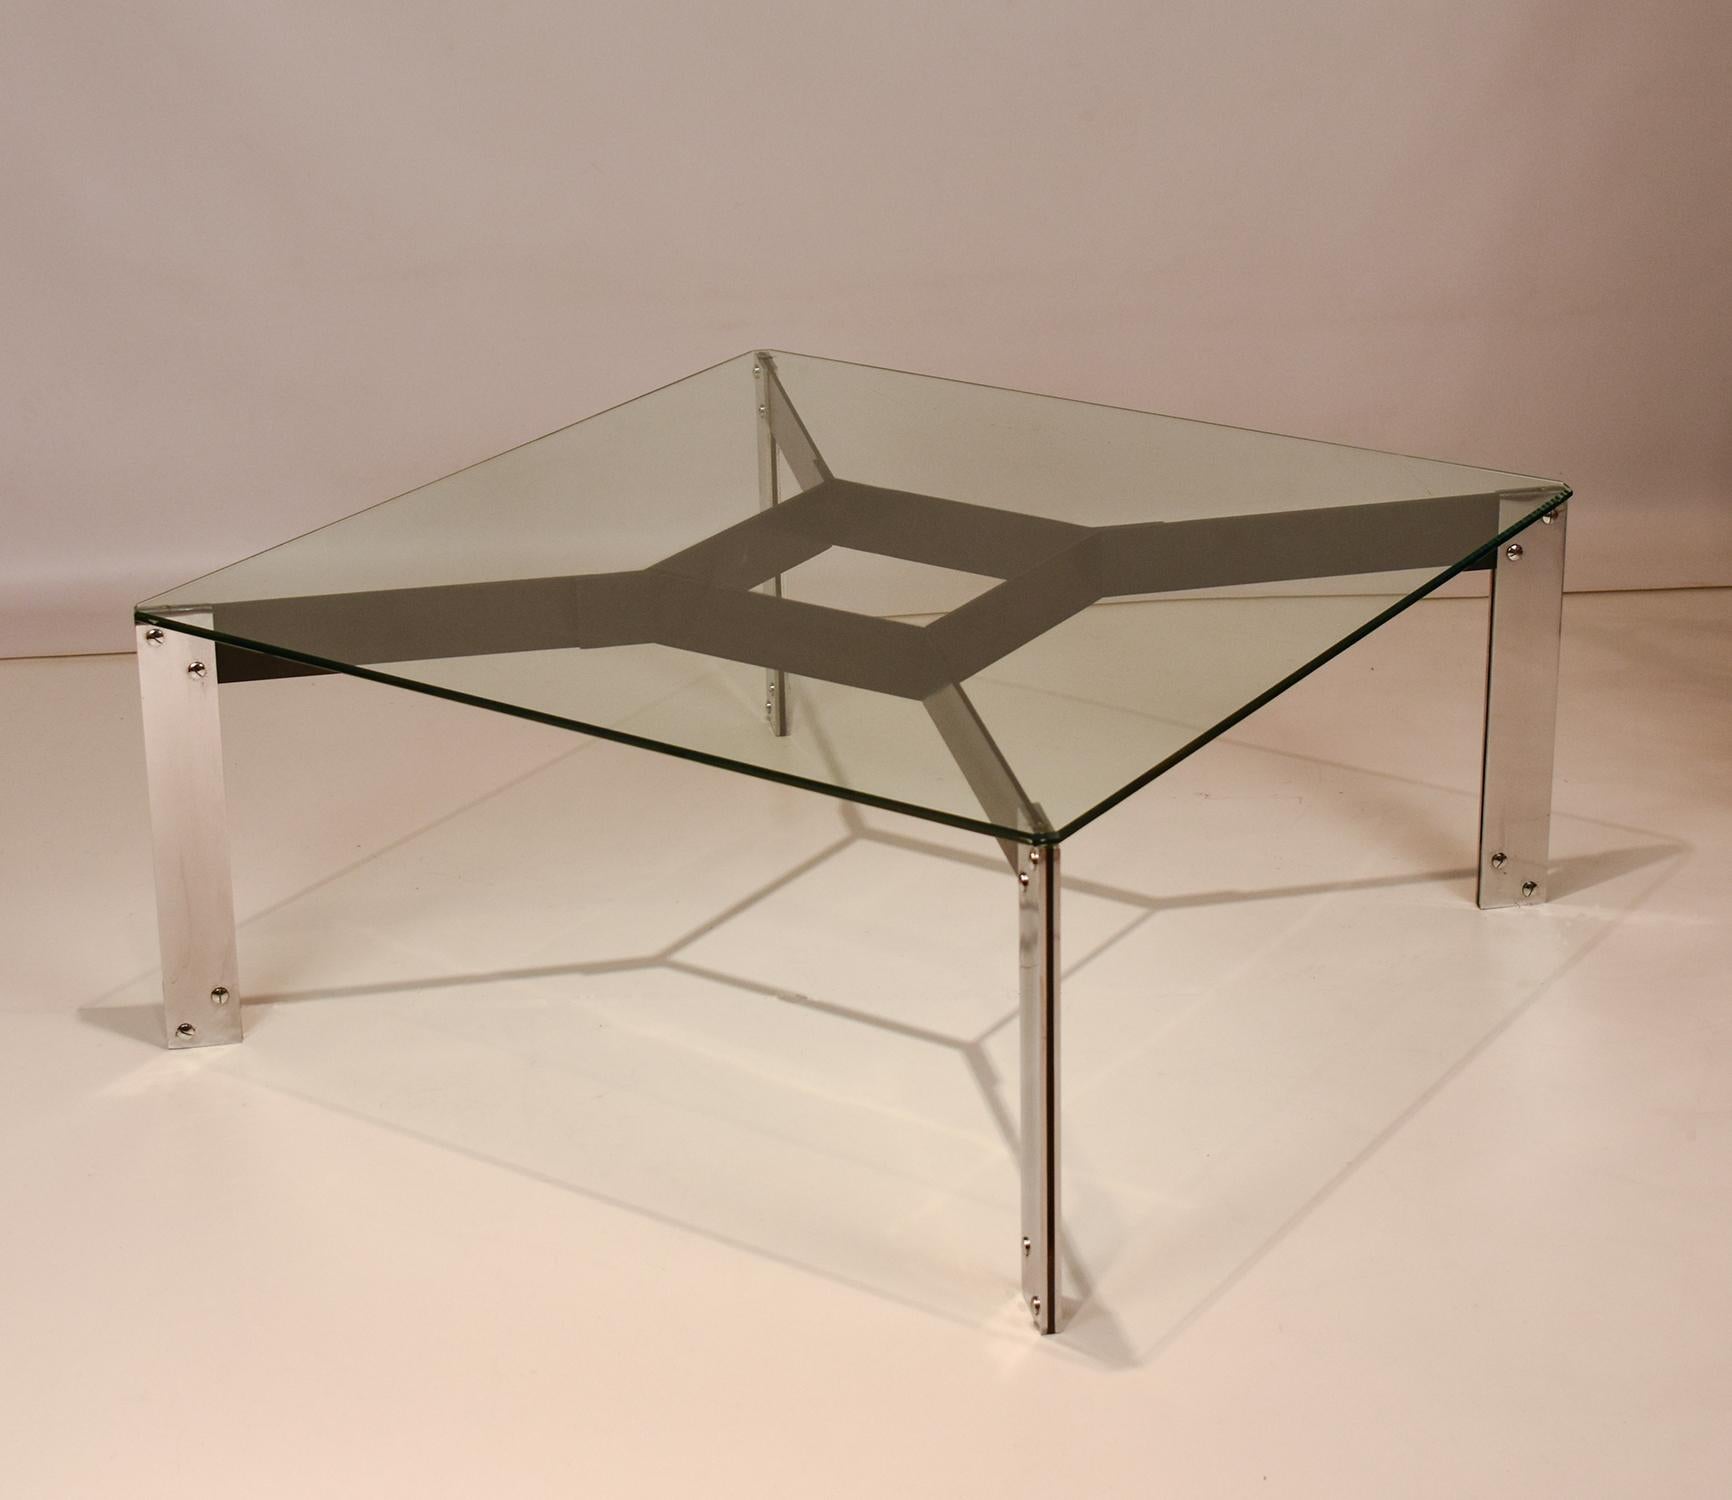 Eines der ersten von Miguel Milá entworfenen und 1962 von Gres veröffentlichten Möbelstücke.

Die rechteckige Platte aus gehärtetem und visiertem Glas ruht auf einer Metallstruktur, die aus vier verchromten Eisenplattenbeinen besteht, die an einem